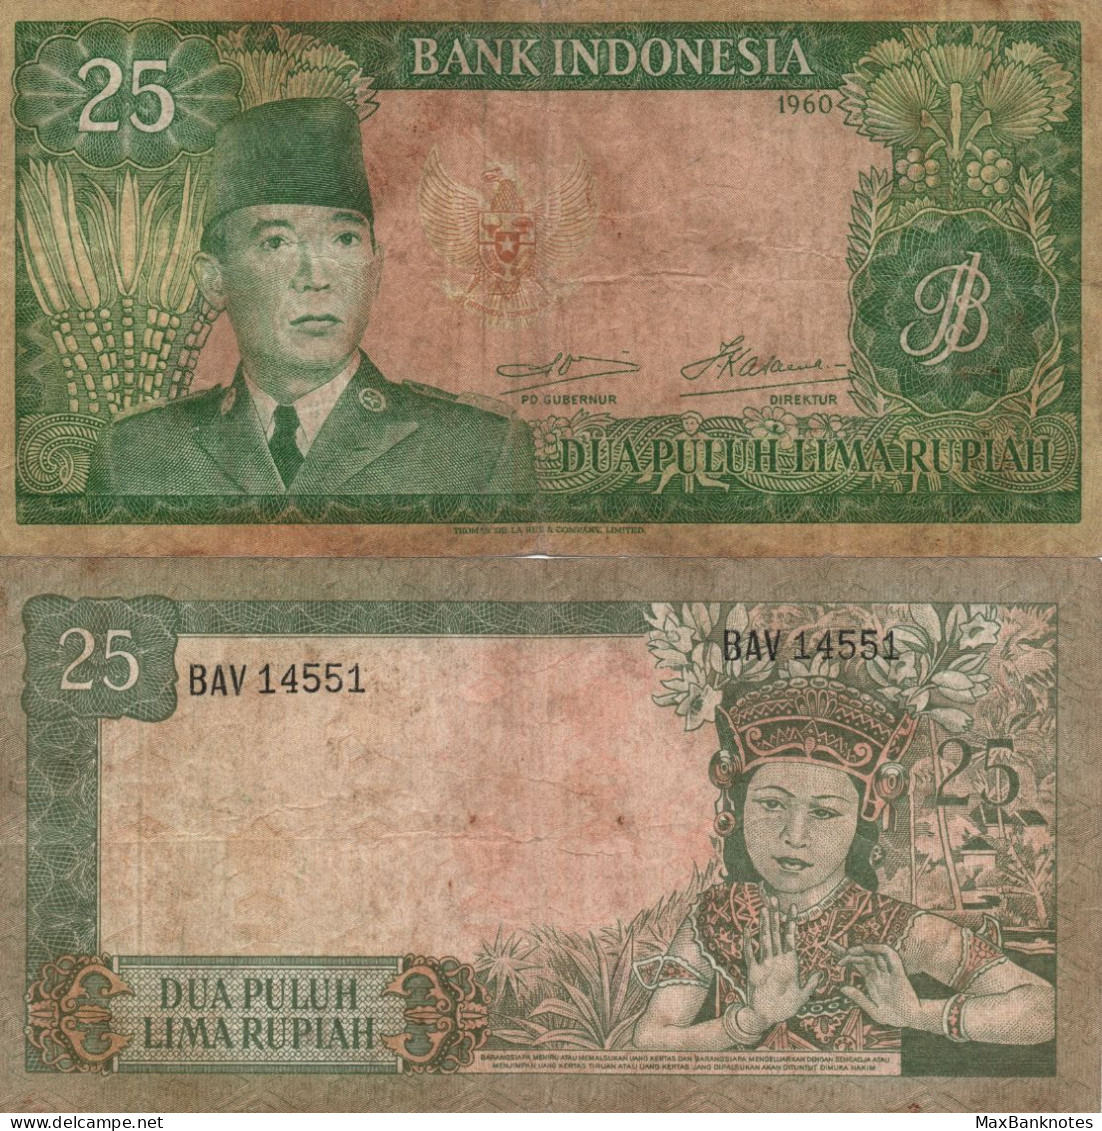 Indonesia / 25 Rupiah / 1960 / P-84(a) / FI - Indonesië